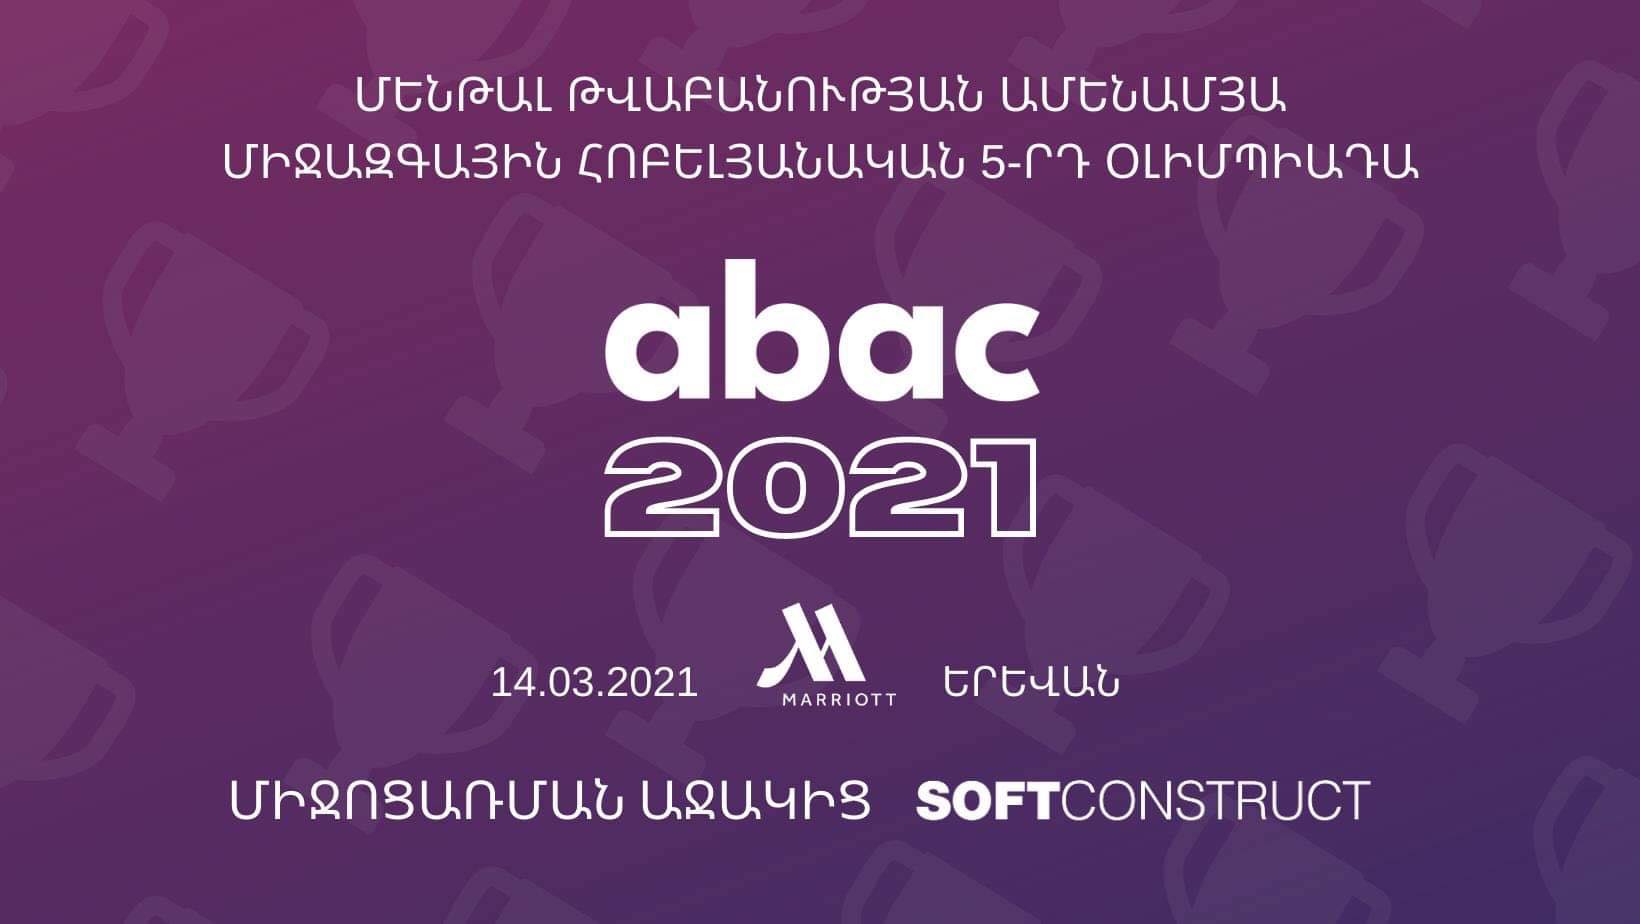 Երևանում տեղի կունենա մենթալ թվաբանության «Աբակ 2021» միջազգային օլիմպիադա